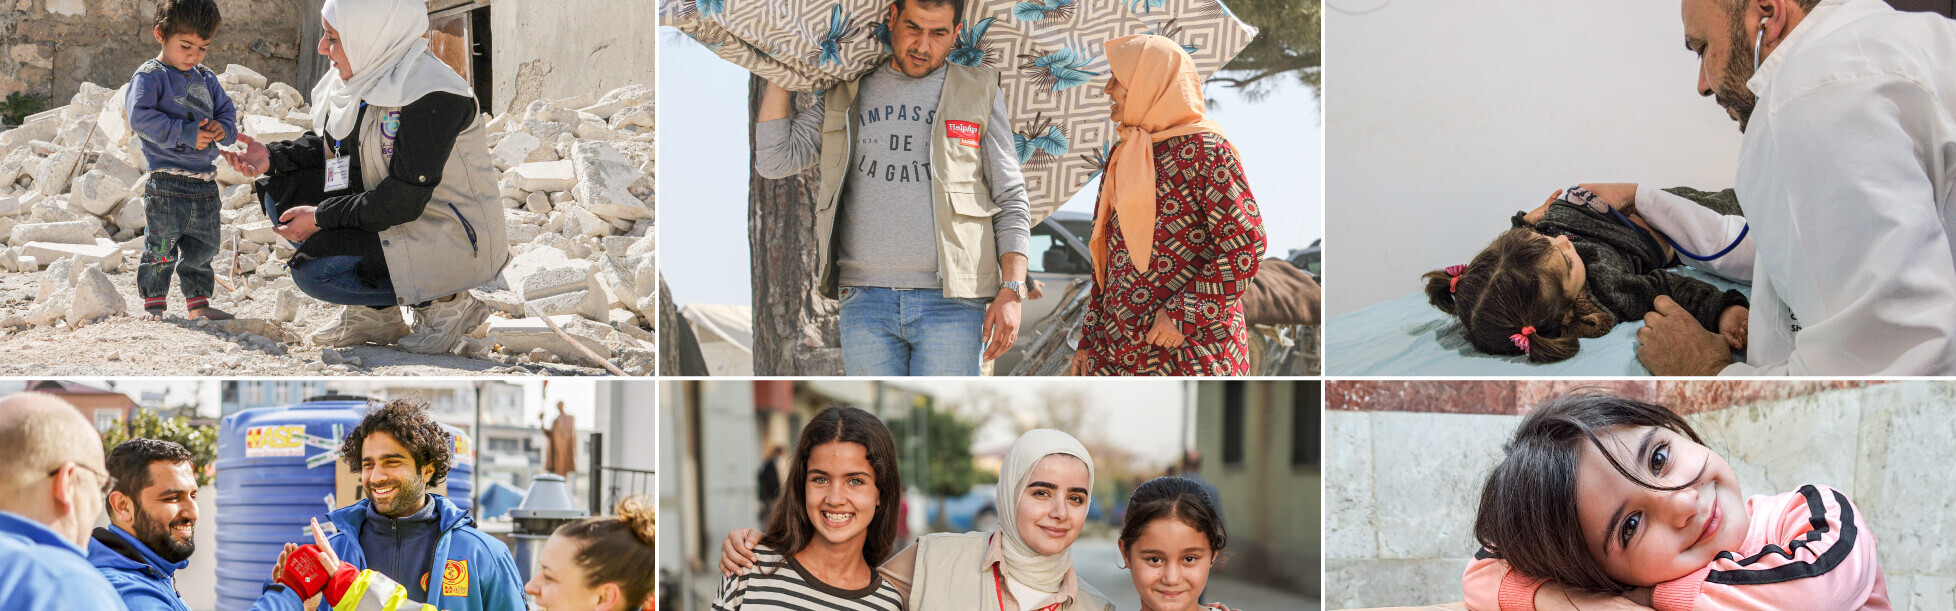 Erdbeben-Hilfe für die Menschen in der Türkei und Syrien